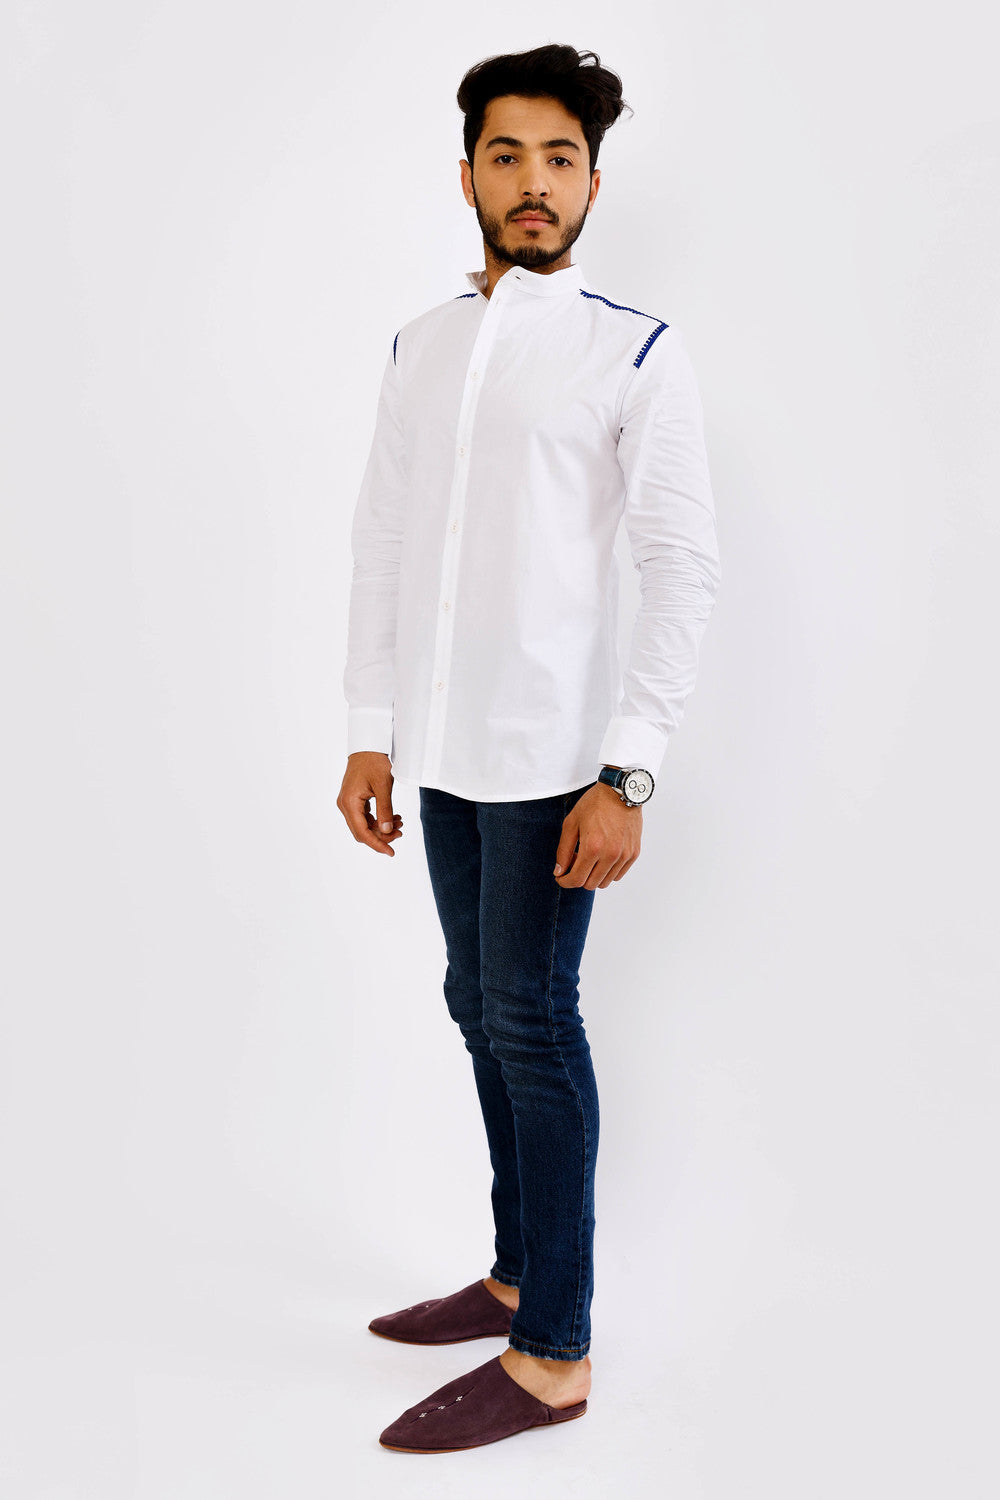 Ghani Men's Long Sleeve Mandarin Collar Shirt in White